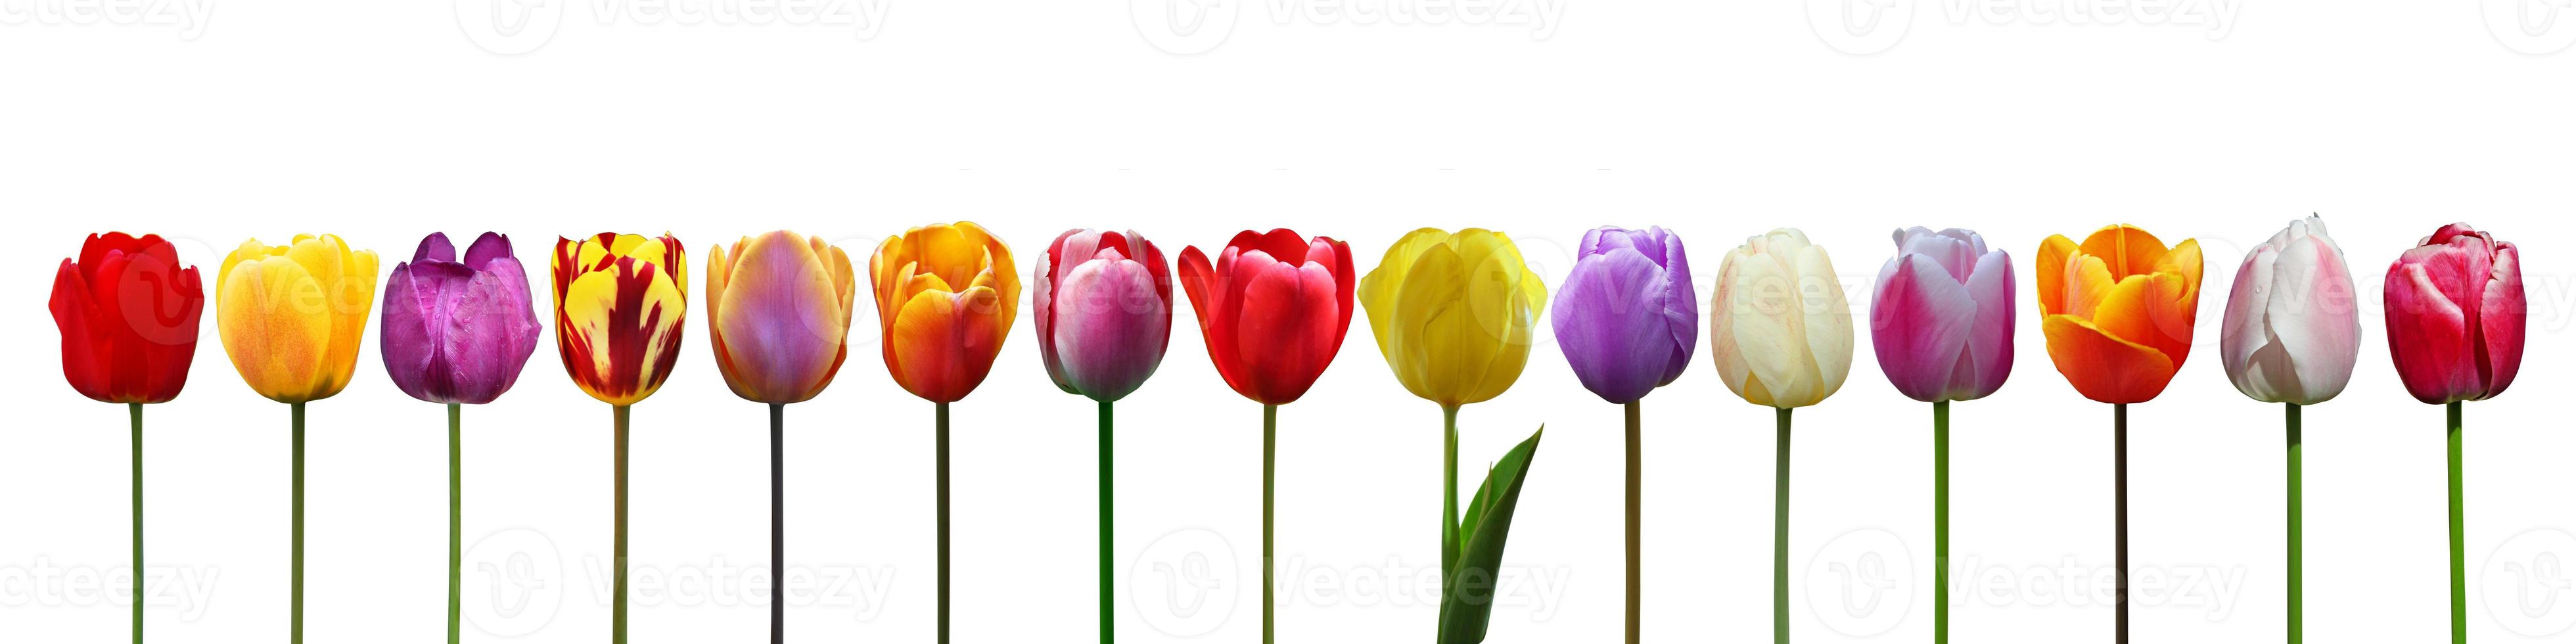 hermosos tulipanes. fondo de naturaleza primaveral para banner web y diseño de tarjetas. foto